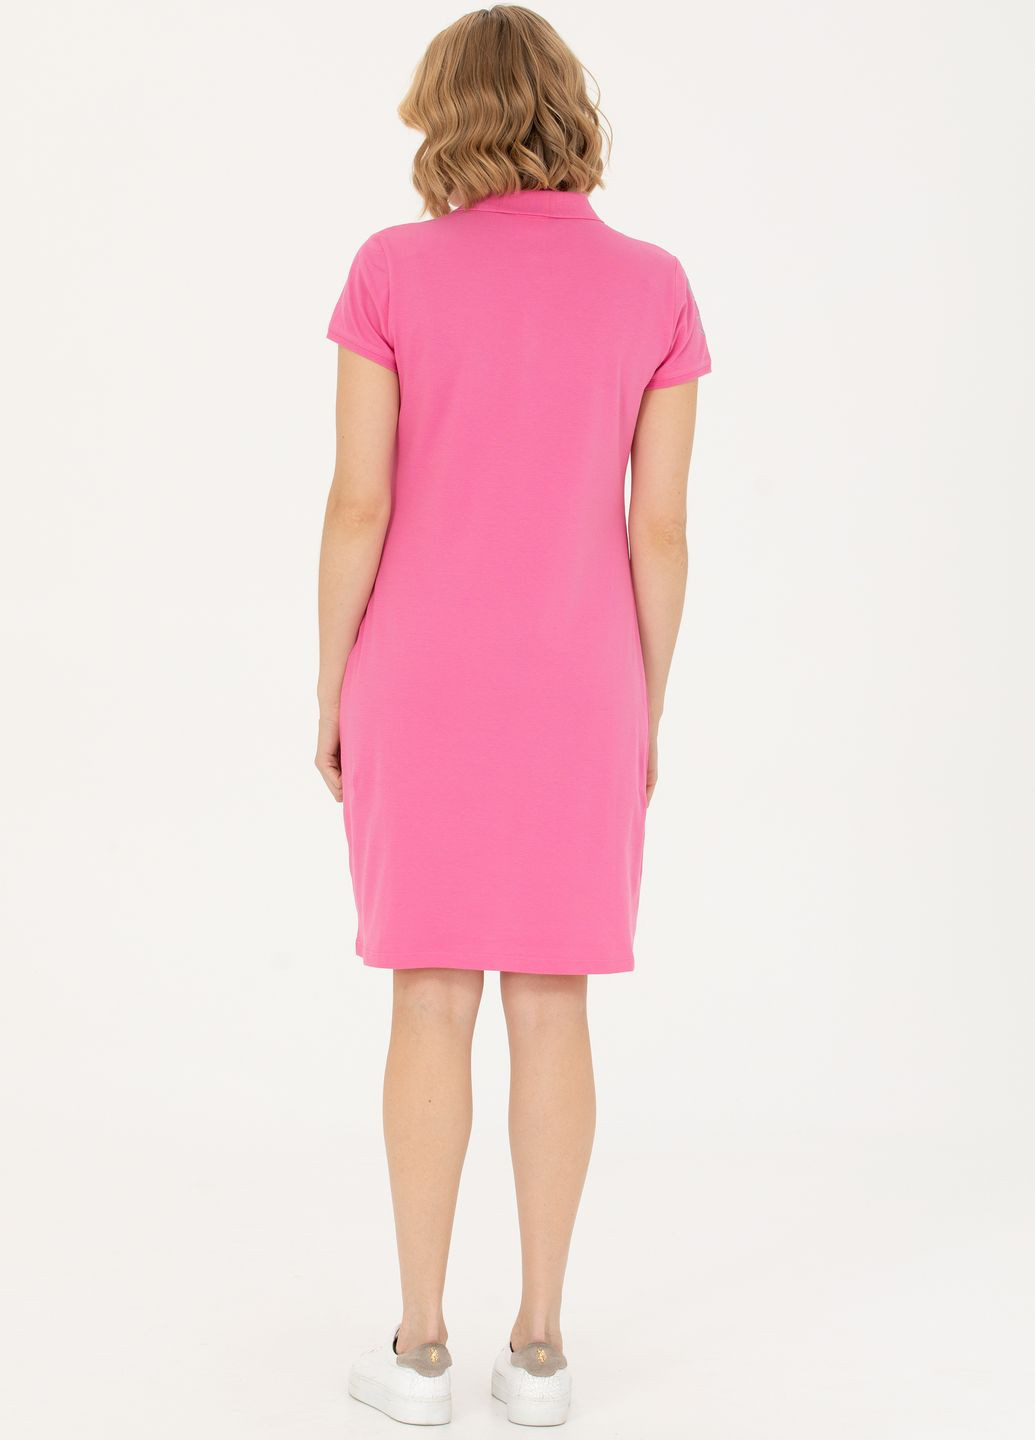 Розовое платье женское U.S. Polo Assn.